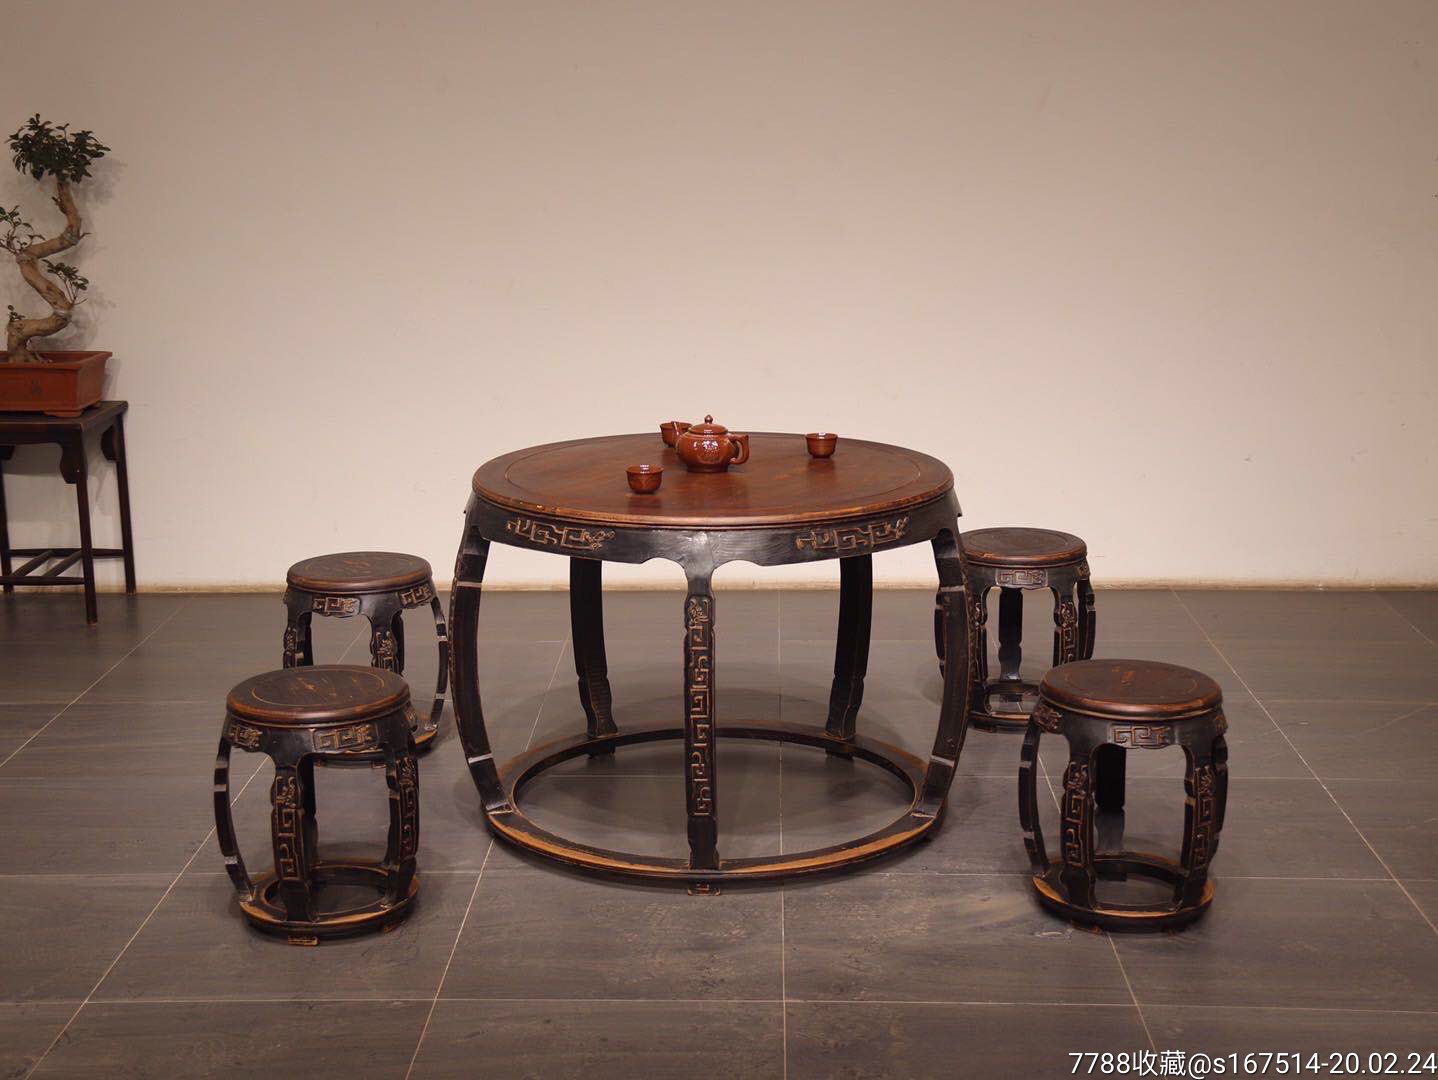 圆桌五件套做工精致雕刻精美古朴典雅雕刻拐子龙纹木质榉木尺寸